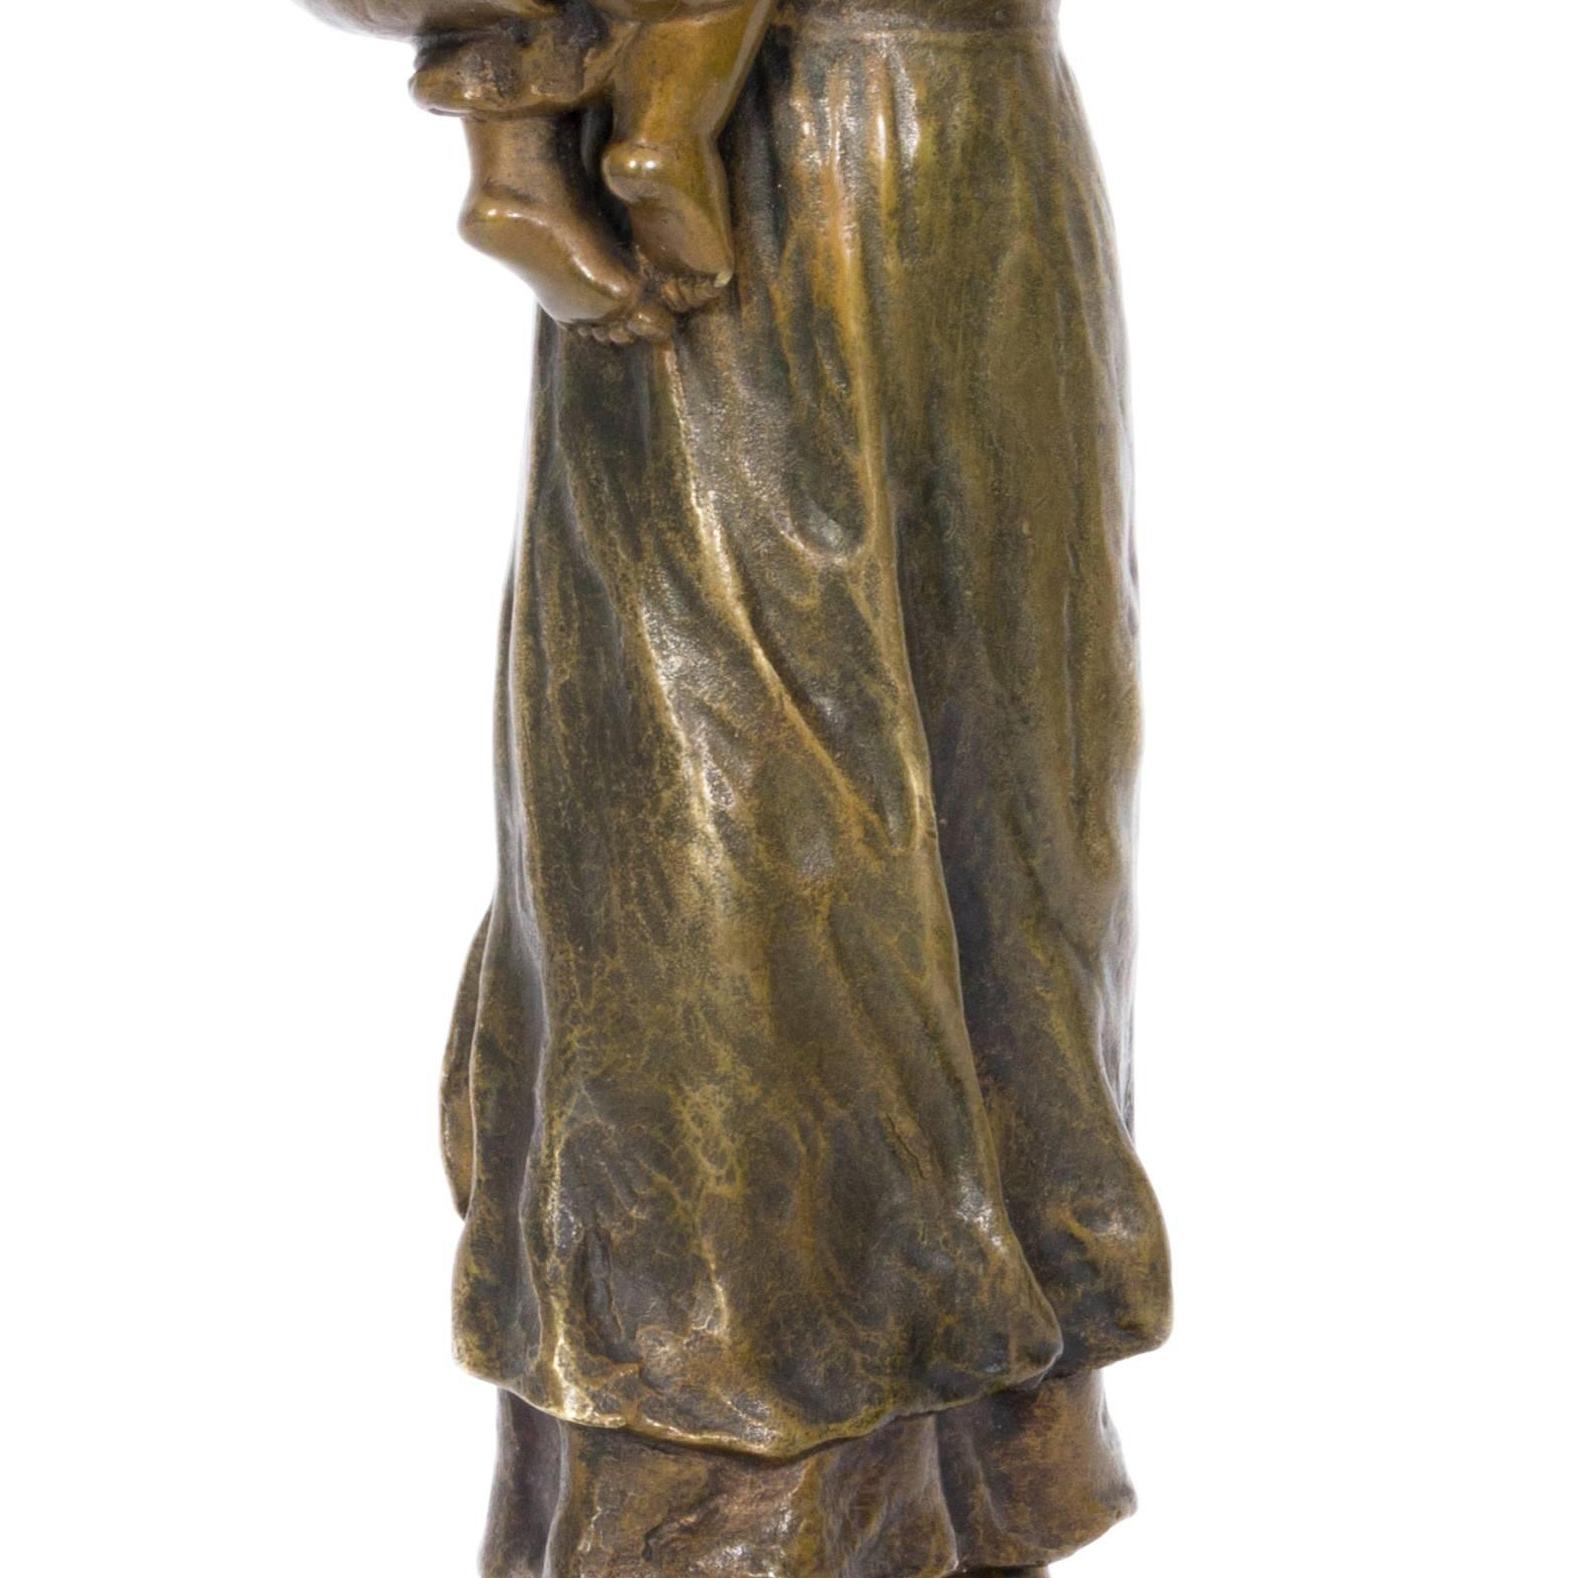 Bäuerin mit Kleinkind (Farmwoman with Child) - Bronze, Rural, around 1900 - Naturalistic Sculpture by Unknown